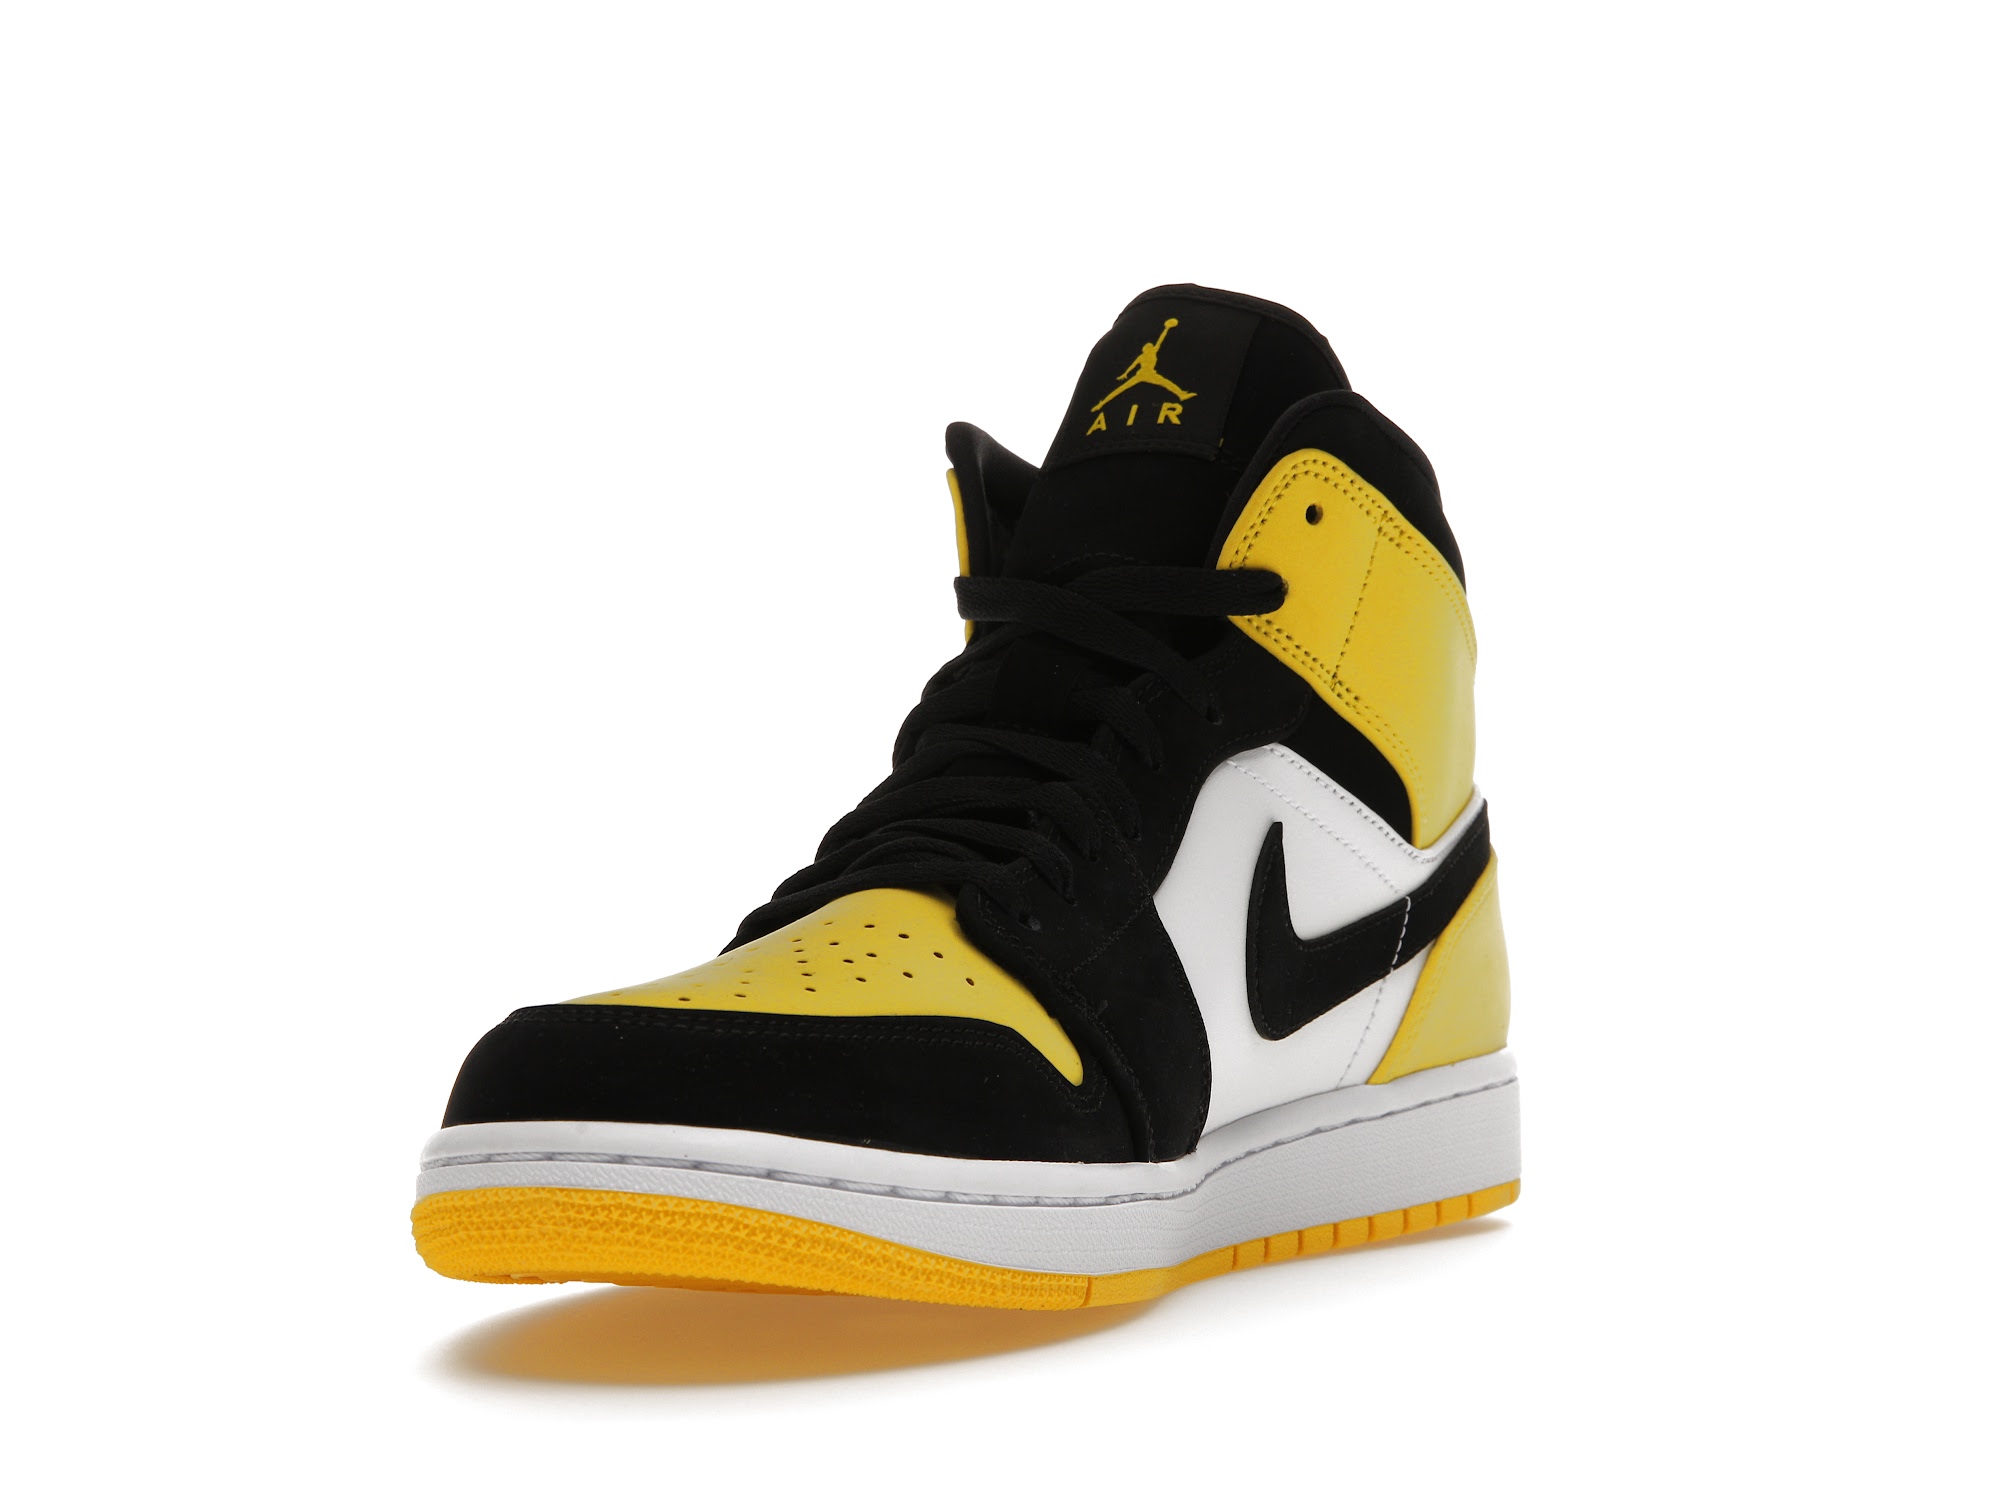 Air Jordan 1 Mid Yellow Toe Black - 852542-071